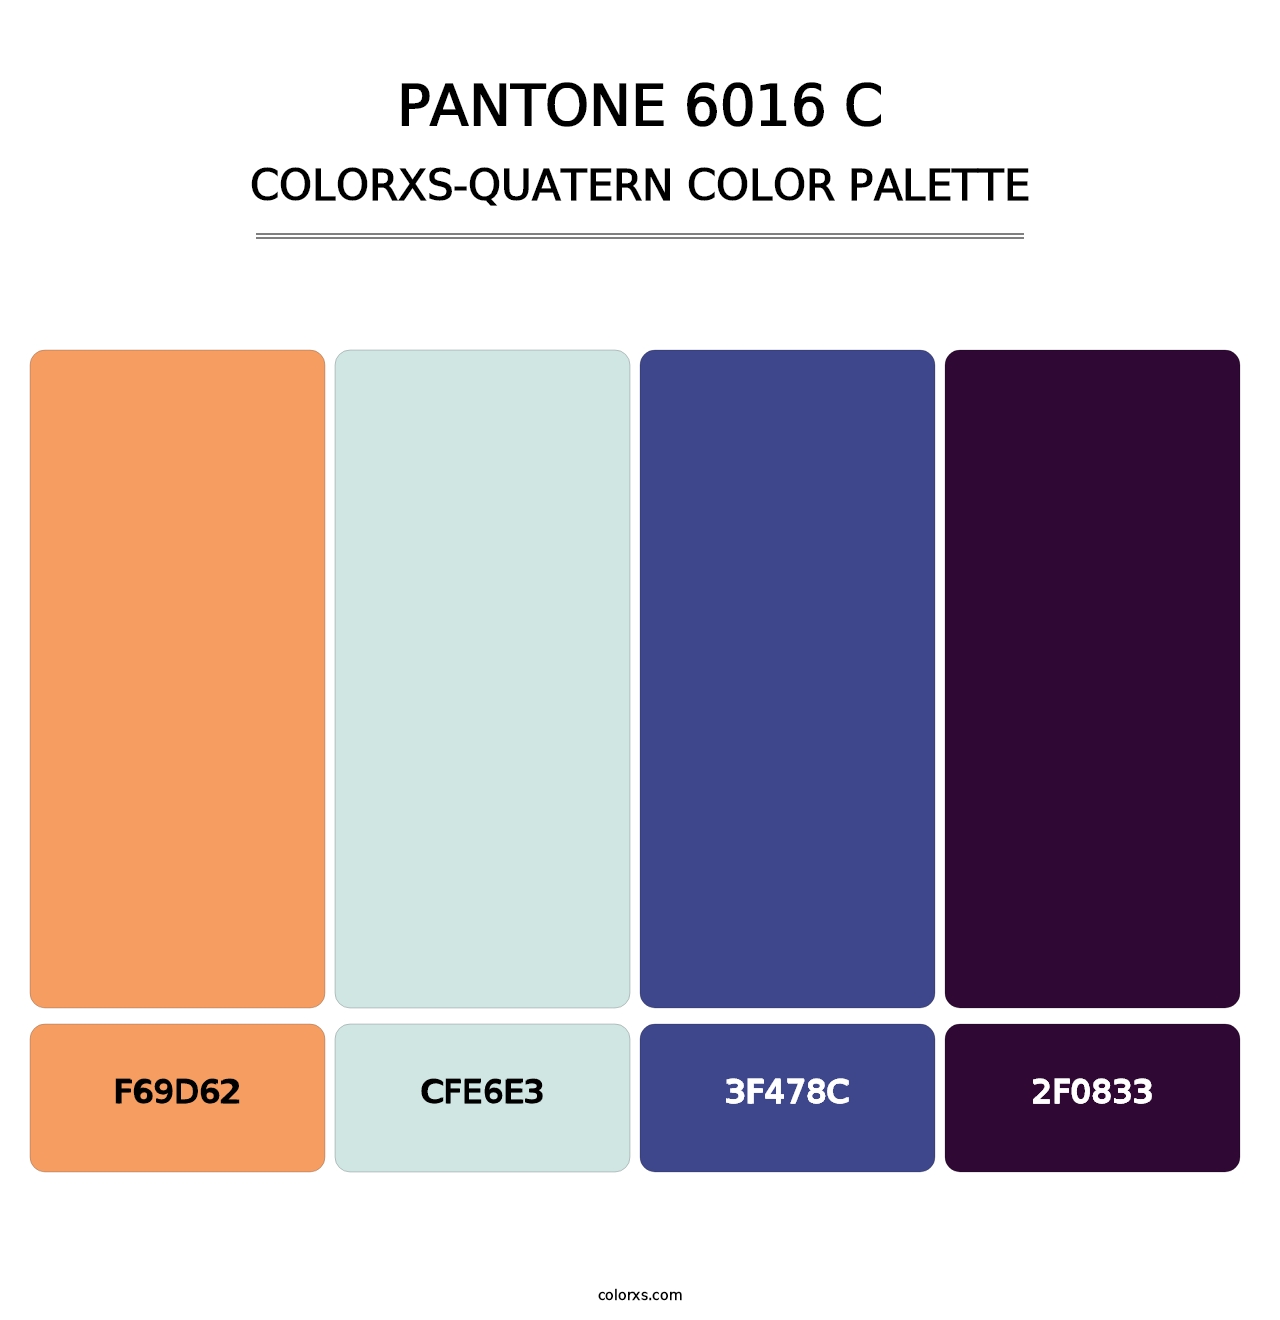 PANTONE 6016 C - Colorxs Quatern Palette